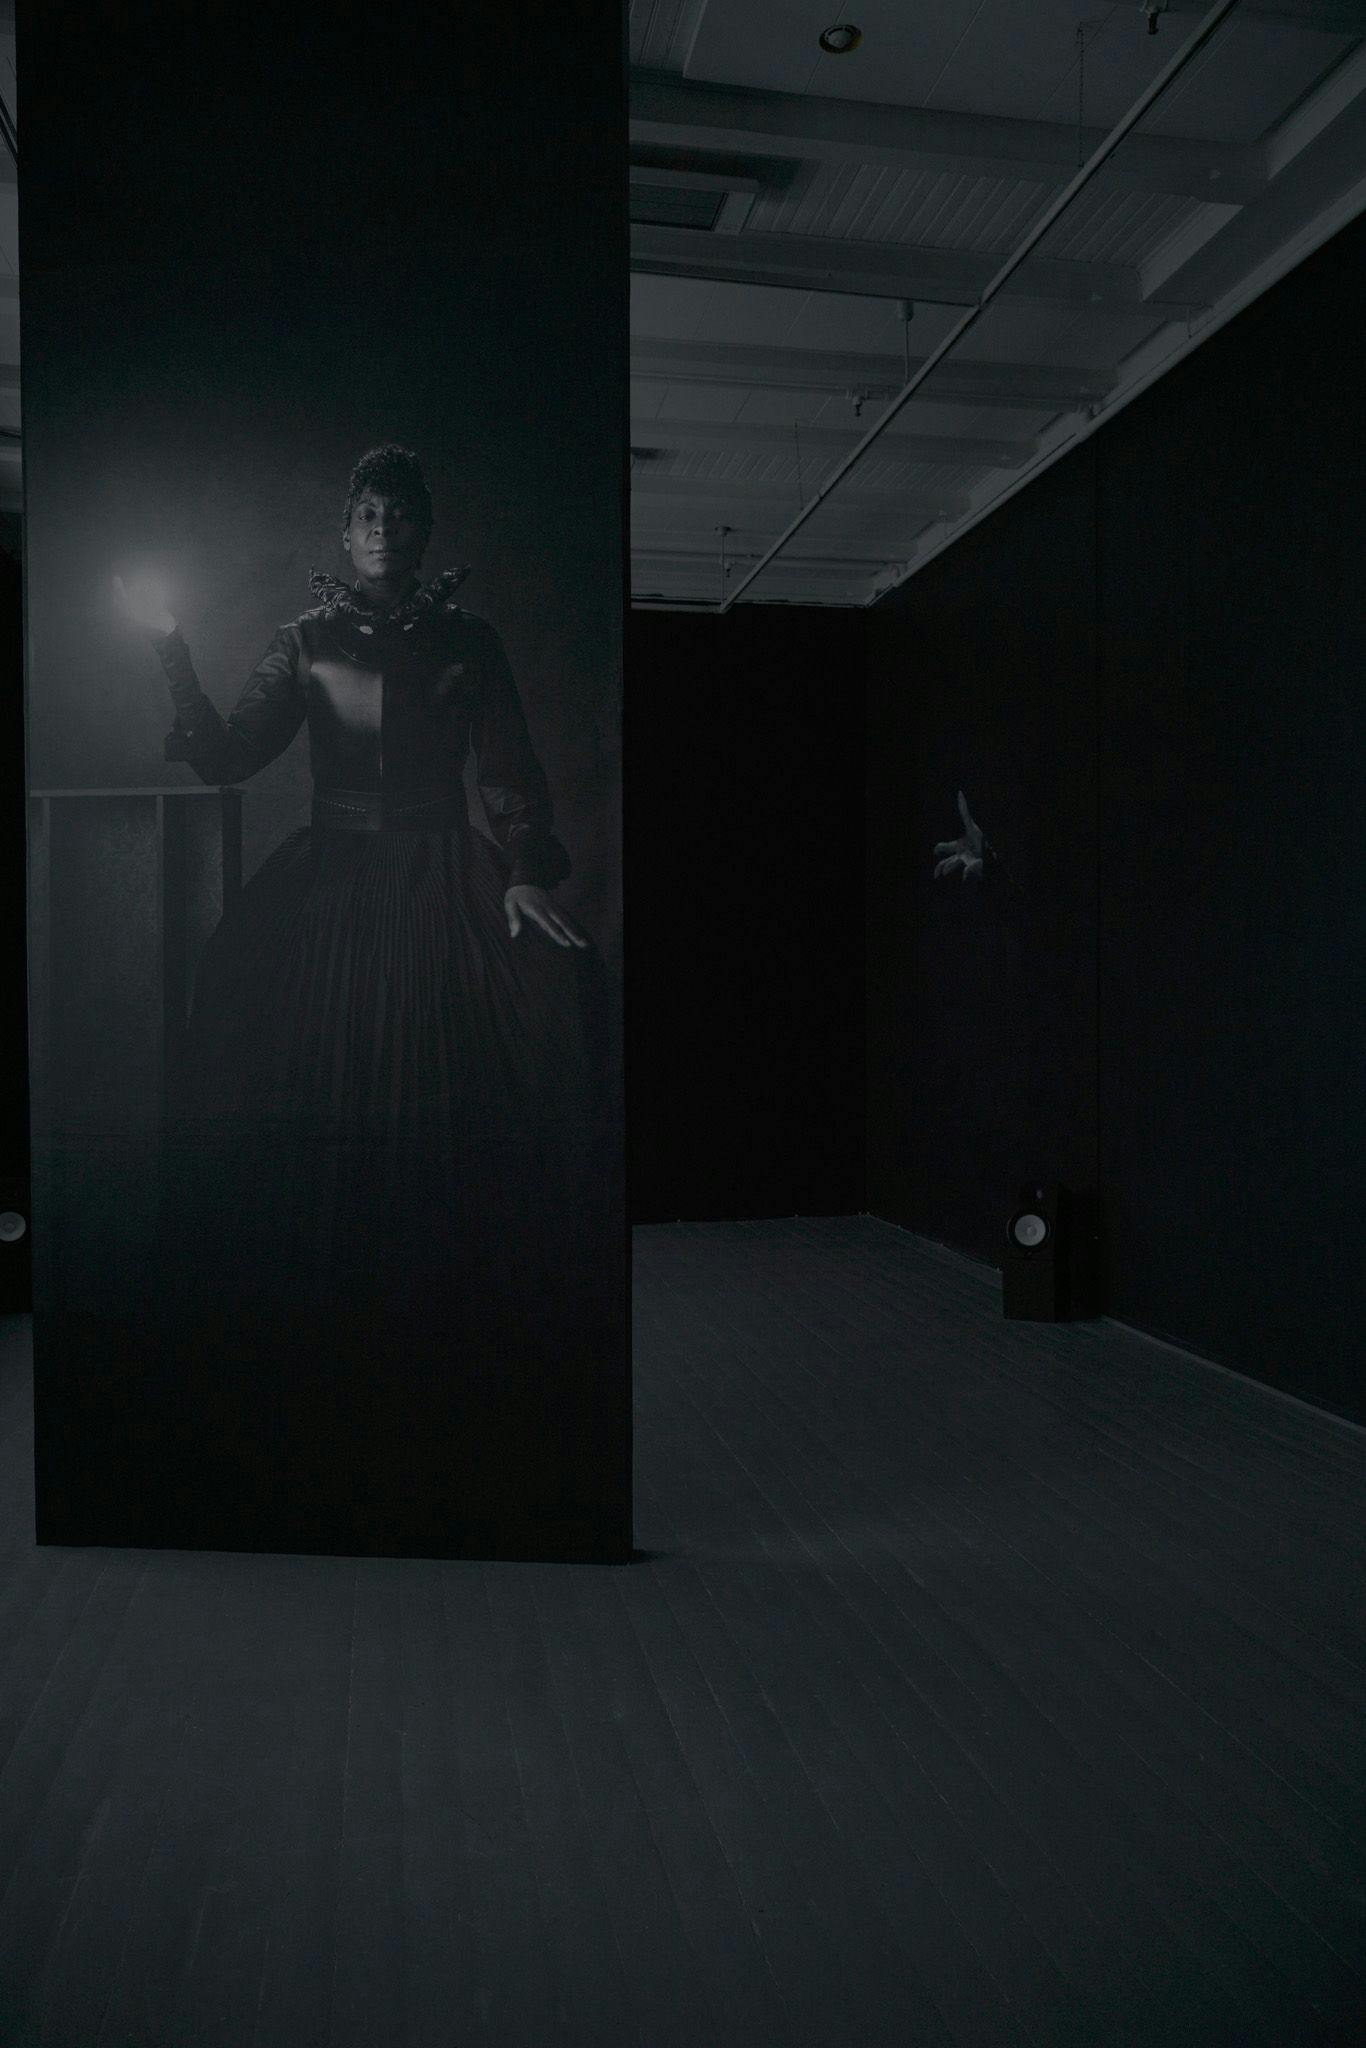 En dame i en svart kjole som holderen lyskule blir projisert på en svart vegg, i et svart rom.